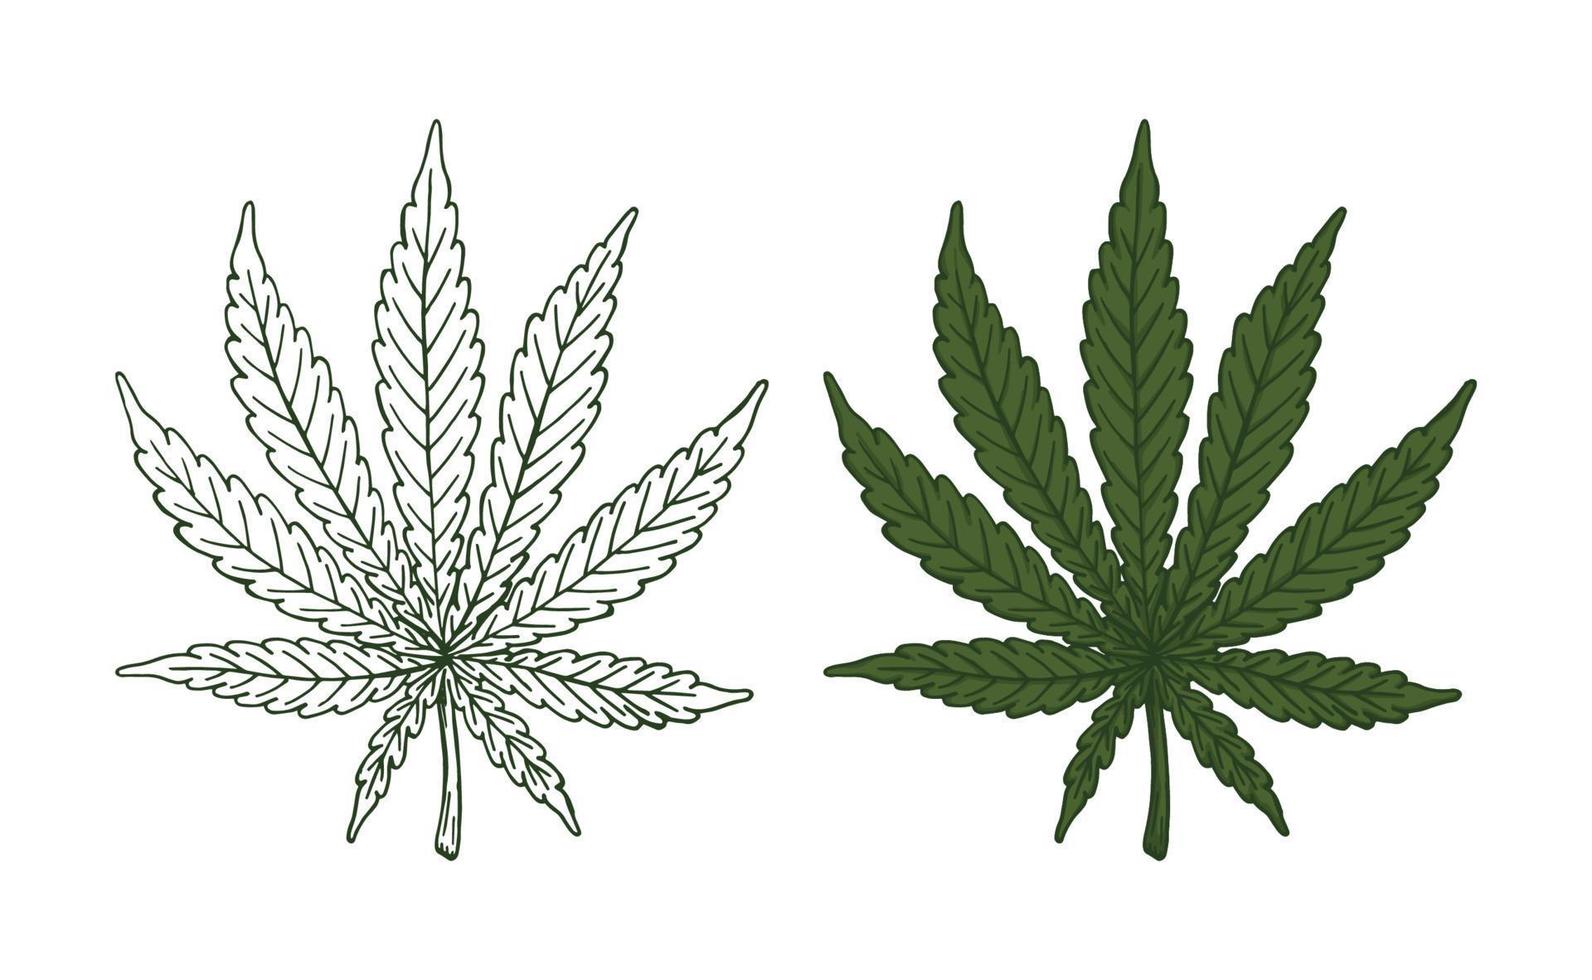 foglia di cannabis verde retrò vecchia linea arte incisione vettore